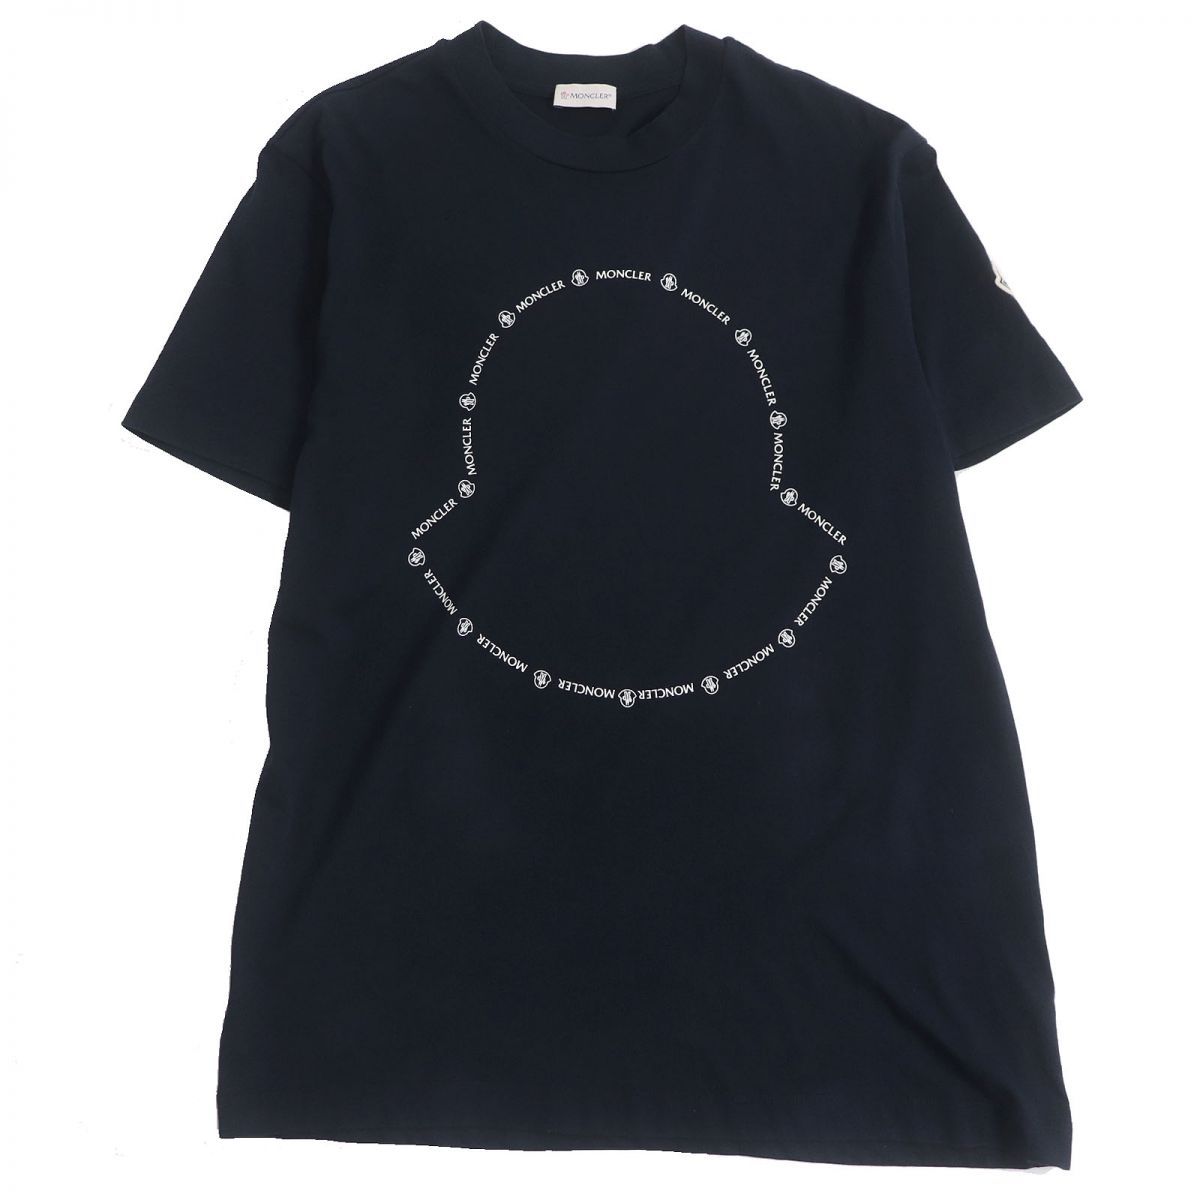 MONCLE☆モンクレール ボックスロゴ プリント ワッペン Tシャツ 半袖/メンズ/S/黒